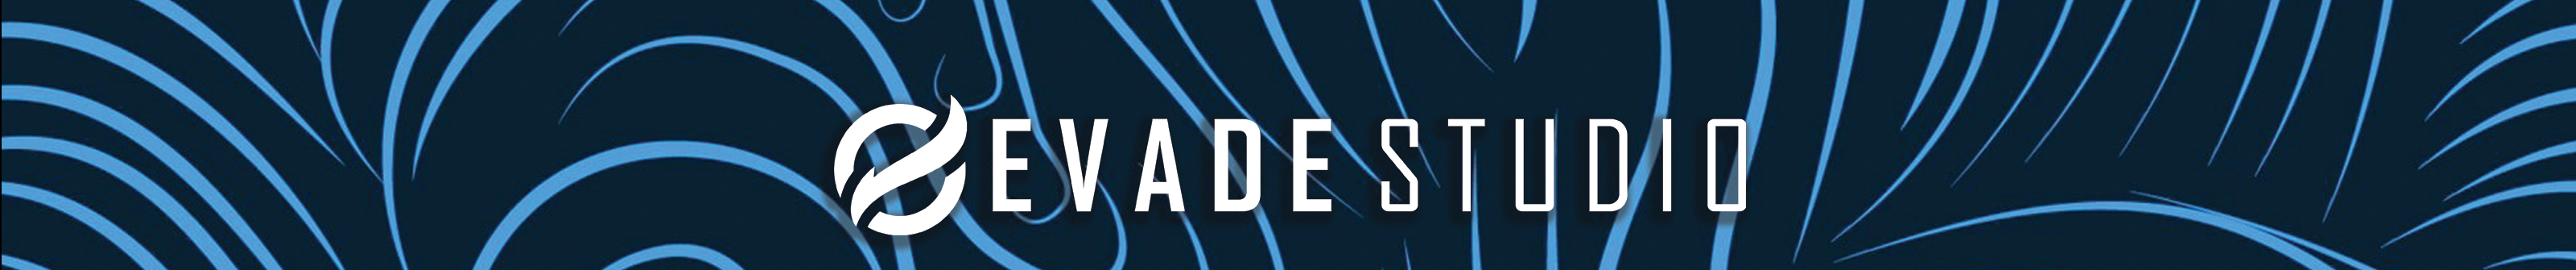 Evade Studio's profile banner